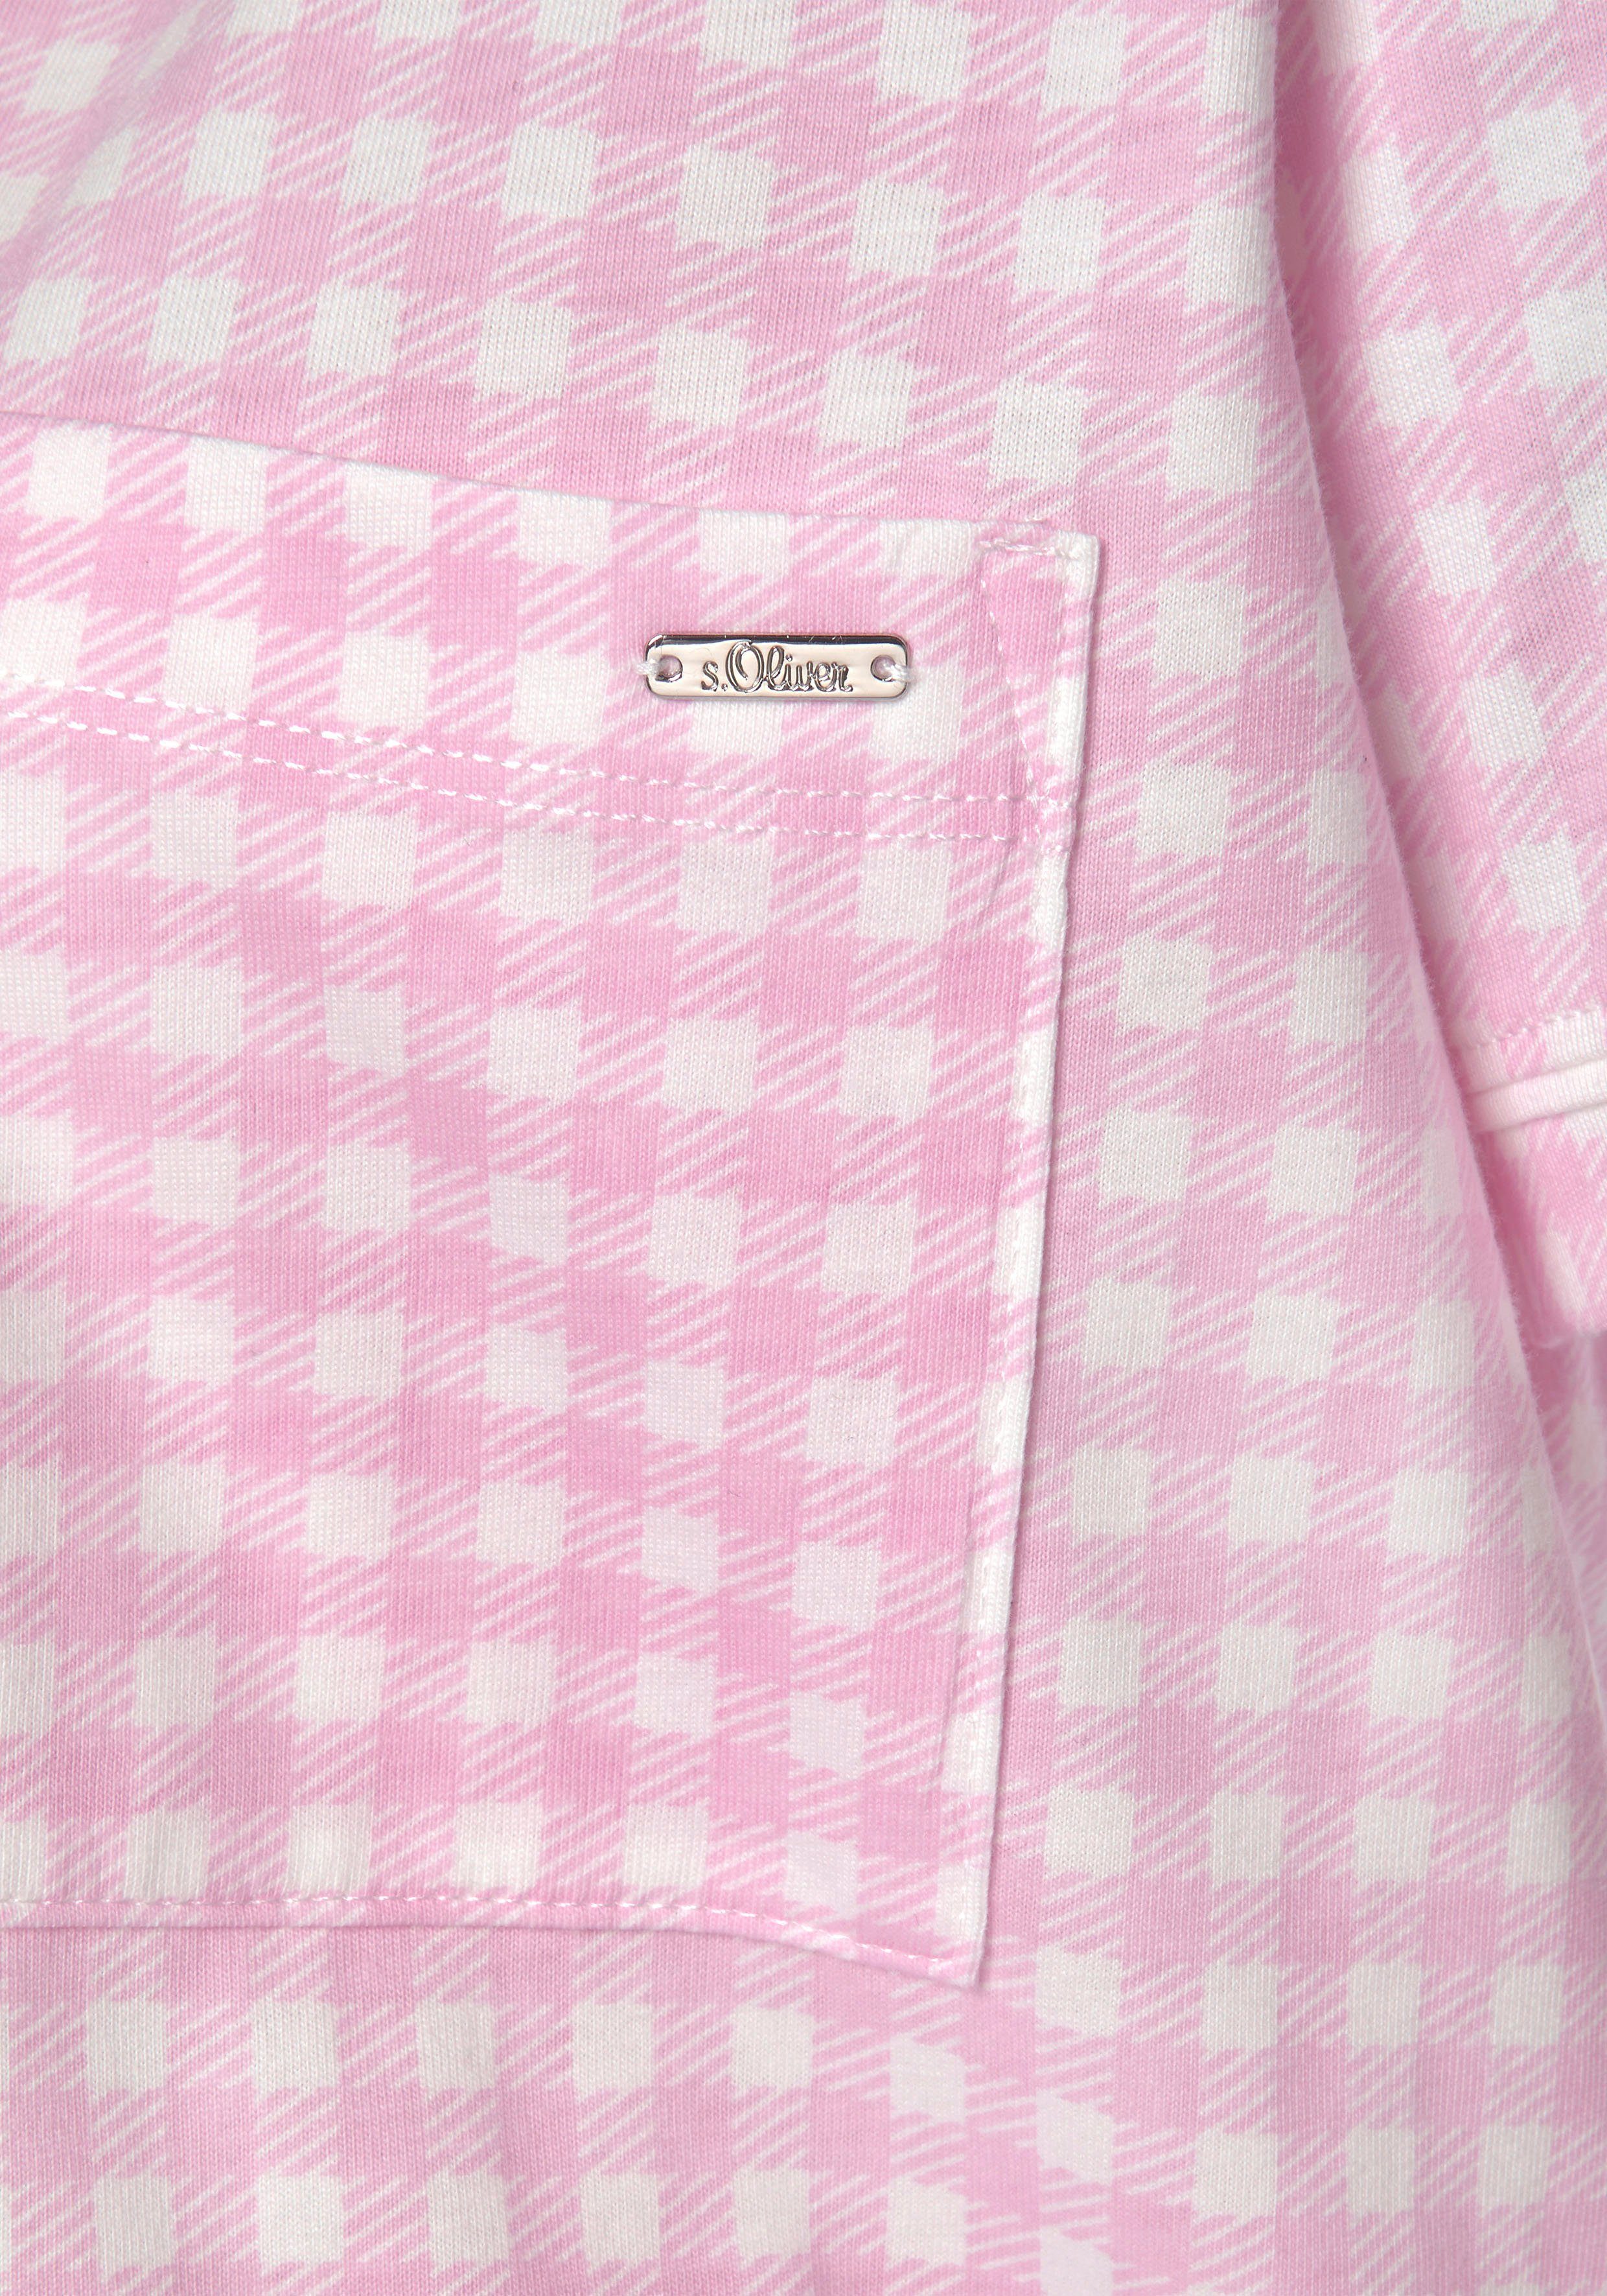 s.Oliver aufgesetzter Brusttasche rosa-kariert Nachthemd mit